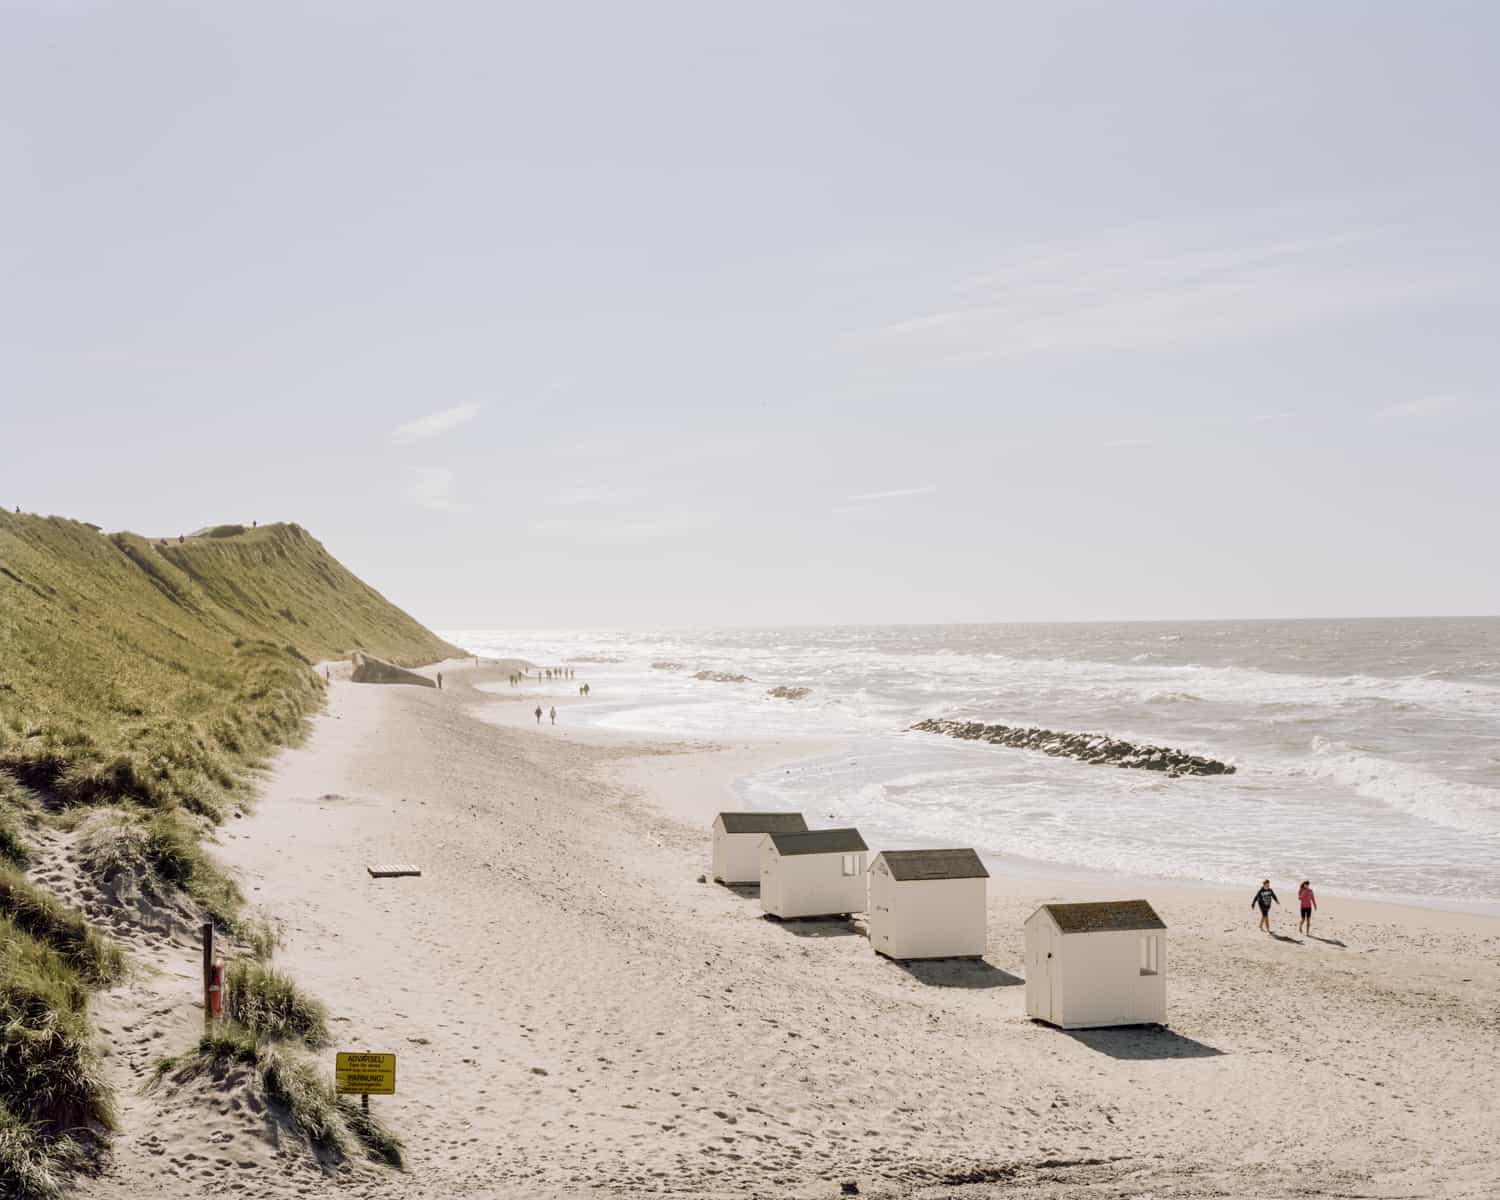 Kribben moeten het achterliggende land beschermen tegen verdere erosie, Denemarken. Foto Claudius Schulze. 